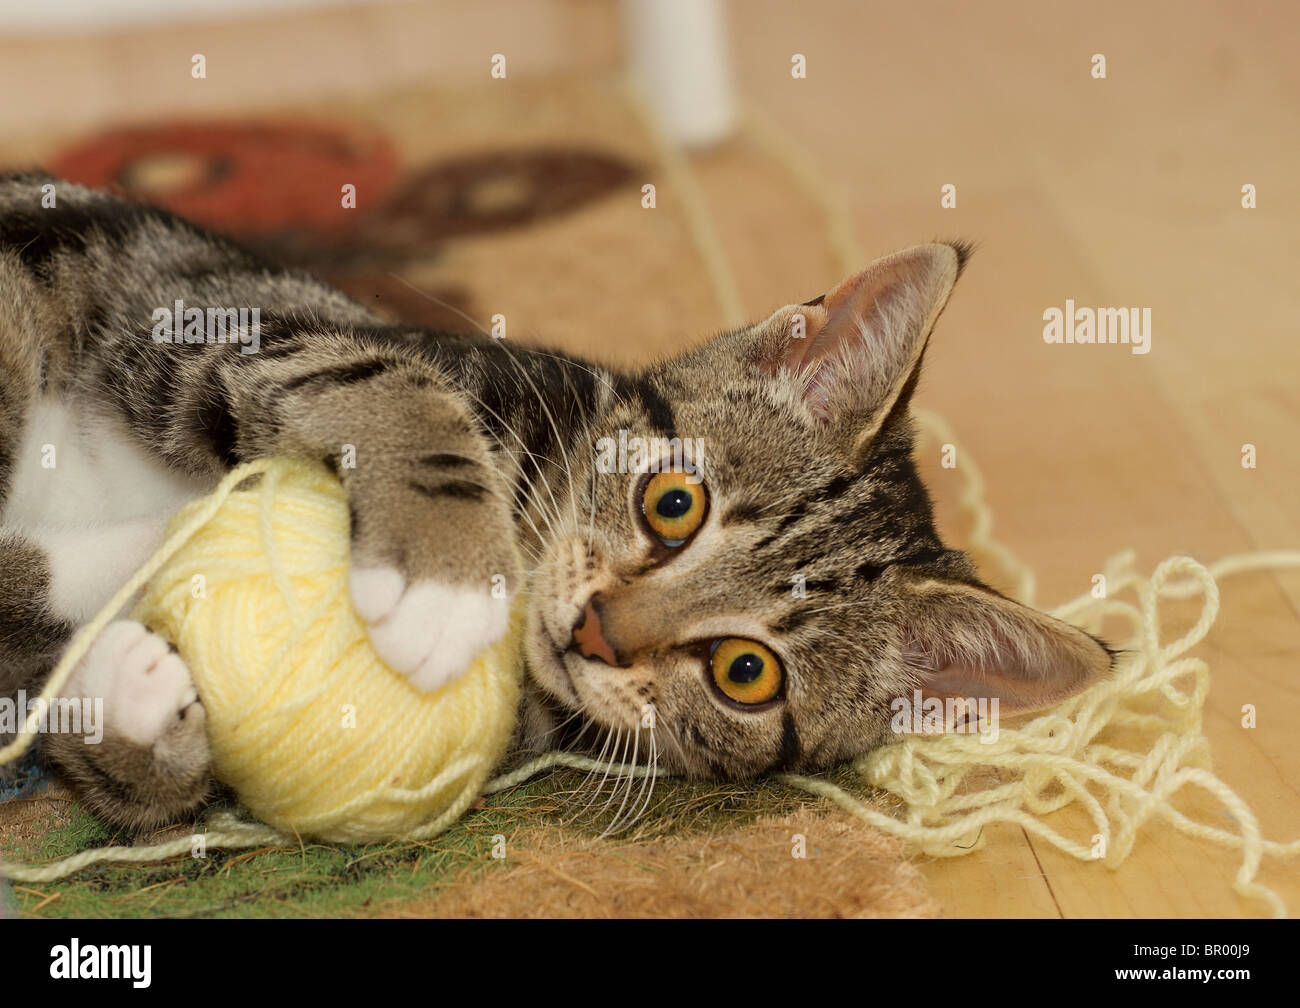 Lindo gatito gato atigrado (Felis catus) jugando en el piso con una gran bola amarilla de lana y mirando directamente a la cámara Foto de stock